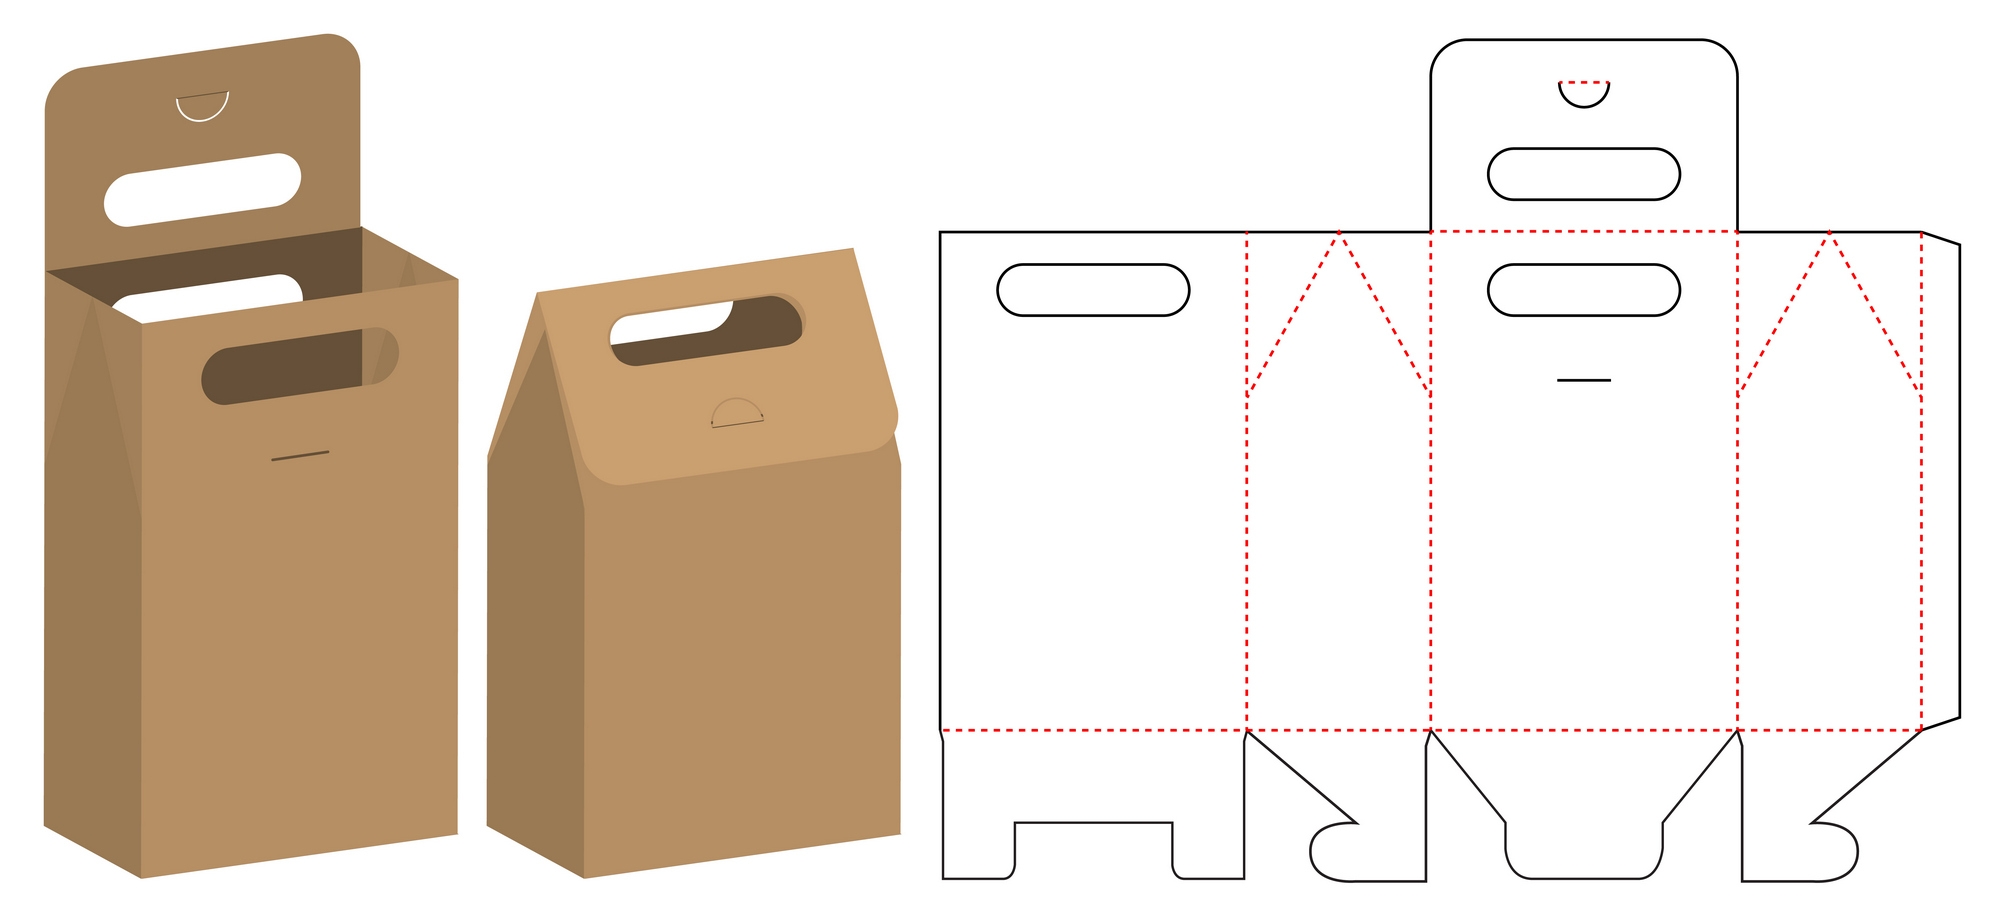 Размер коробки бумаги а3. Макет упаковки пакета. Развертка бумажного пакета. Развертка подарочного пакета. Упаковка развертка коробки.